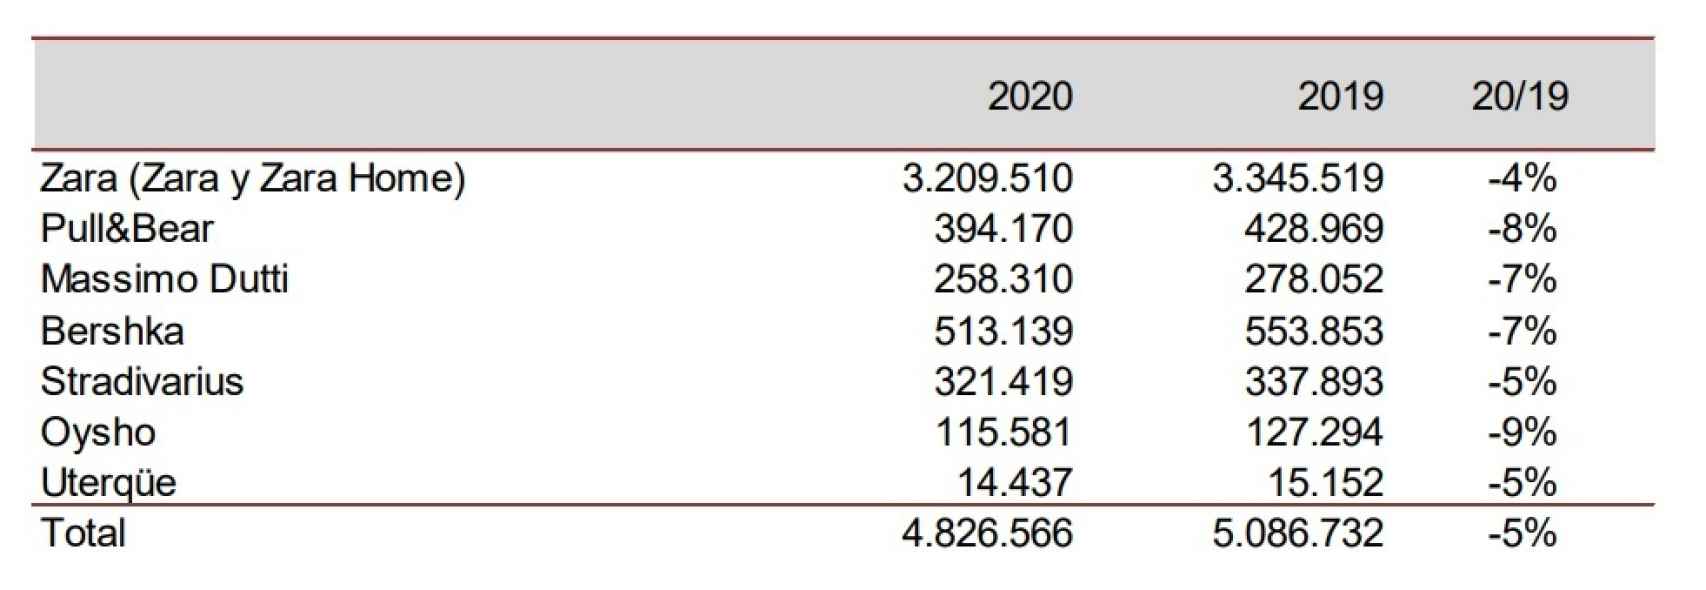 Superficie por metros cuadrados de las marcas de Inditex en 2020. Fuente: Inditex.